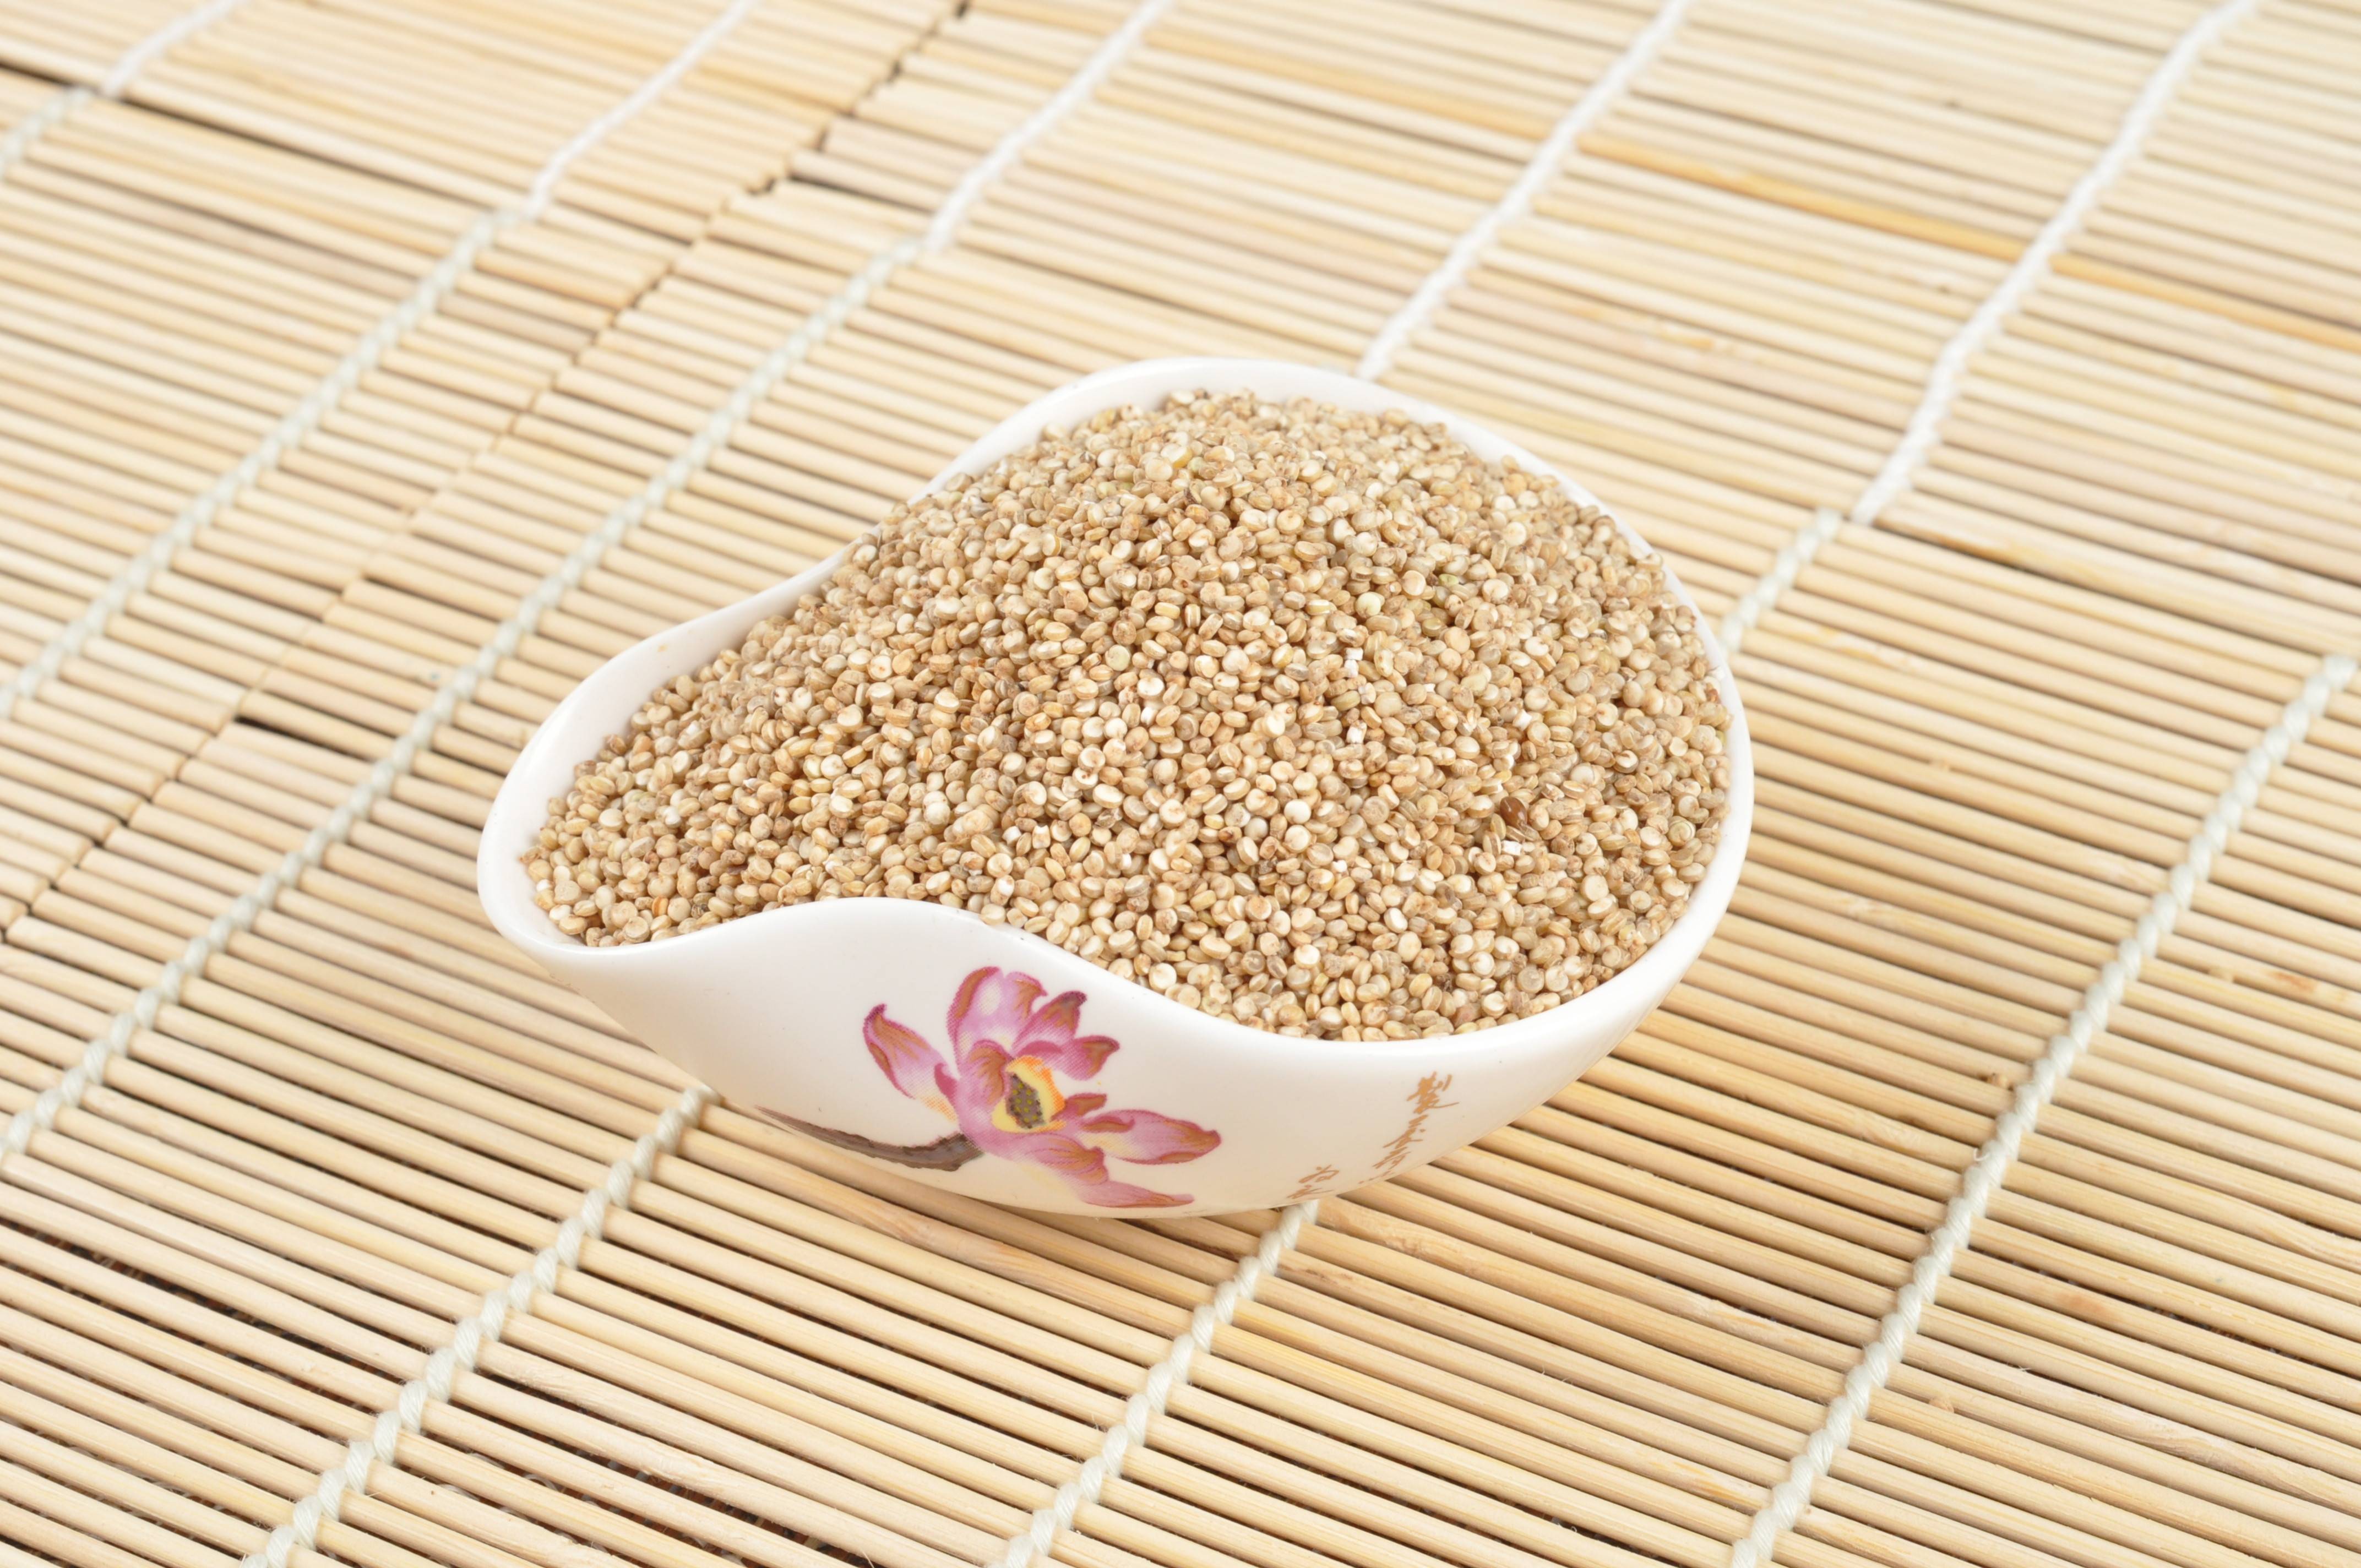 原创"藜麦"被誉为"营养黄金",为何获此美誉?3个健康常识需了解